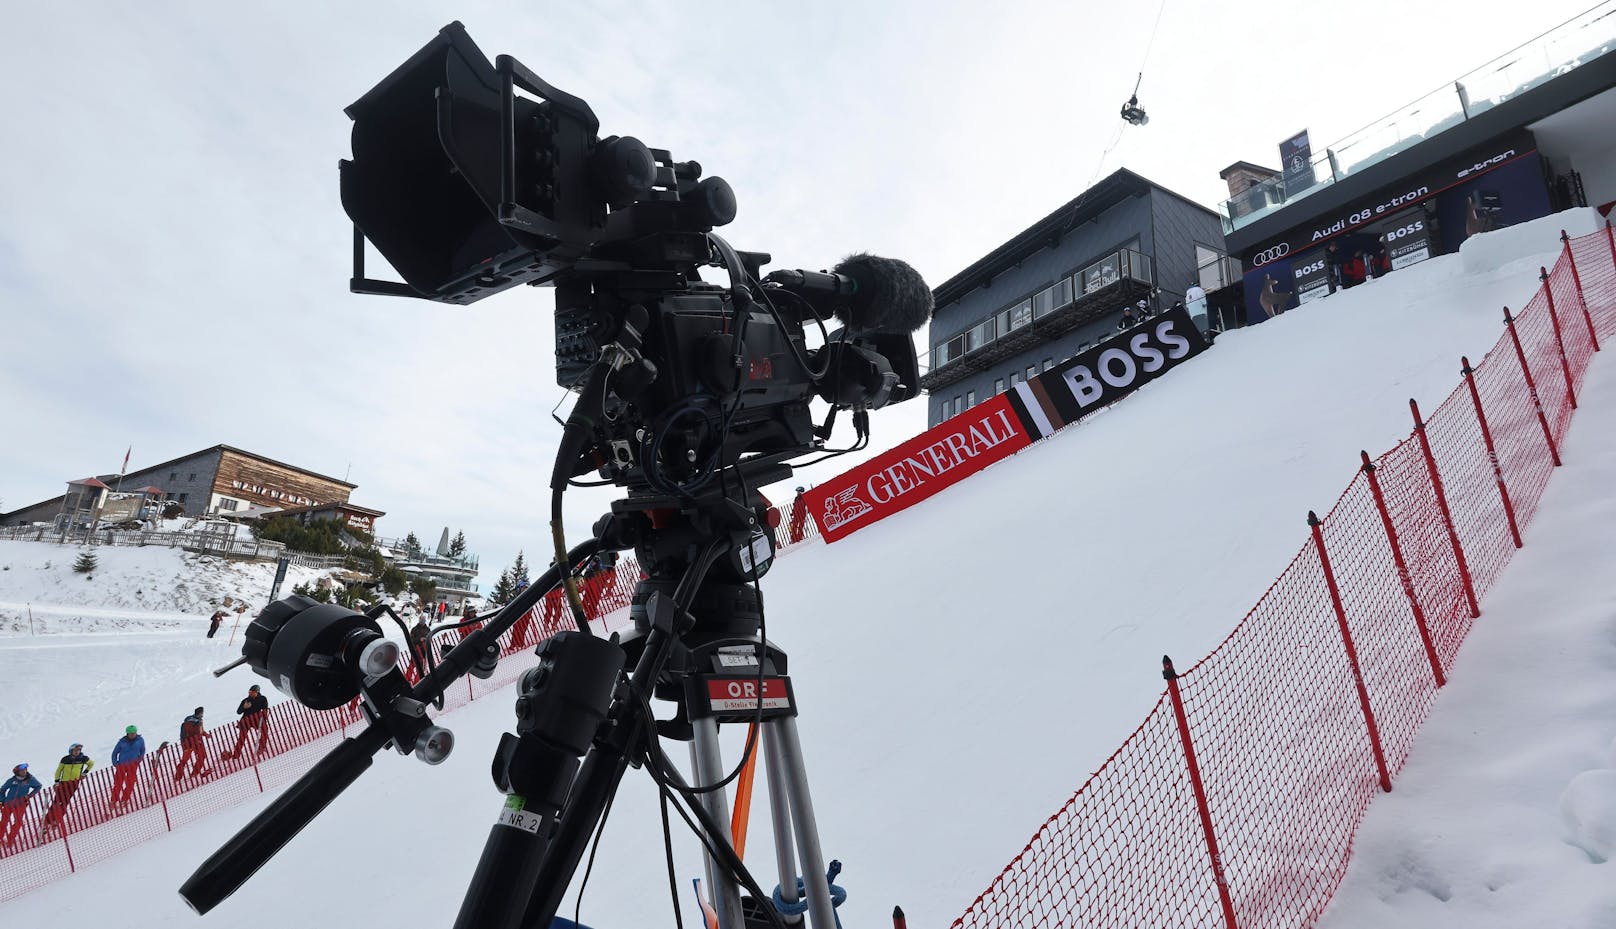 Während des Kitzbühel-Wochenendes übertragen 45 TV-Stationen aus der ganzen Welt die Rennen. 30 Radiosender sind vor Ort. 262 Millionen Menschen verfolgen die insgesamt 55 Stunden Berichterstattung.